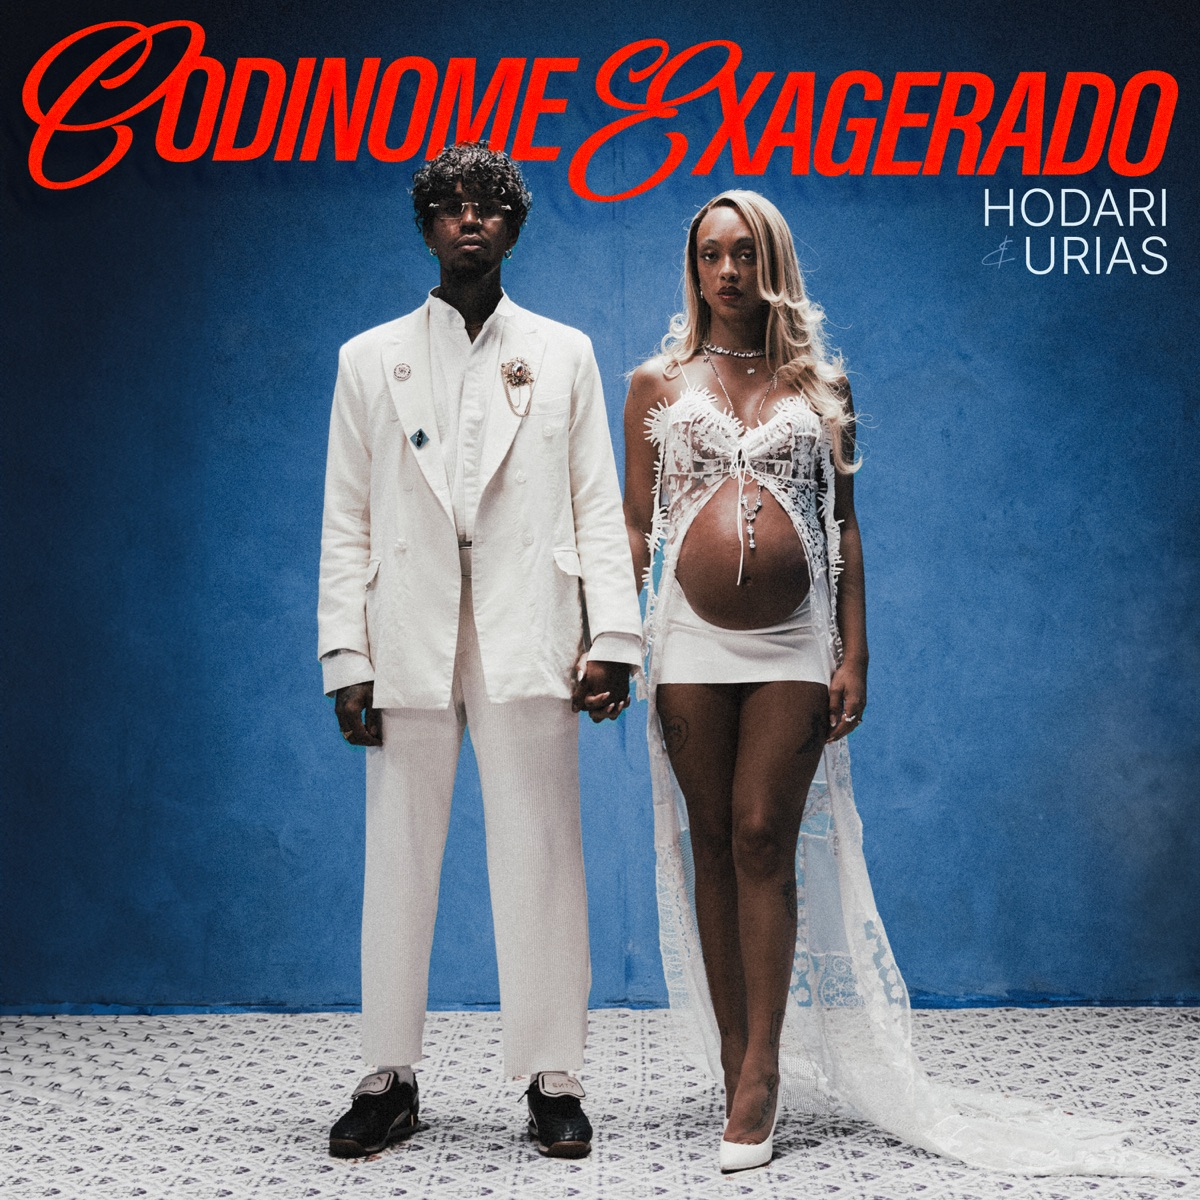 Hodari & Urias Codinome Exagerado cover artwork